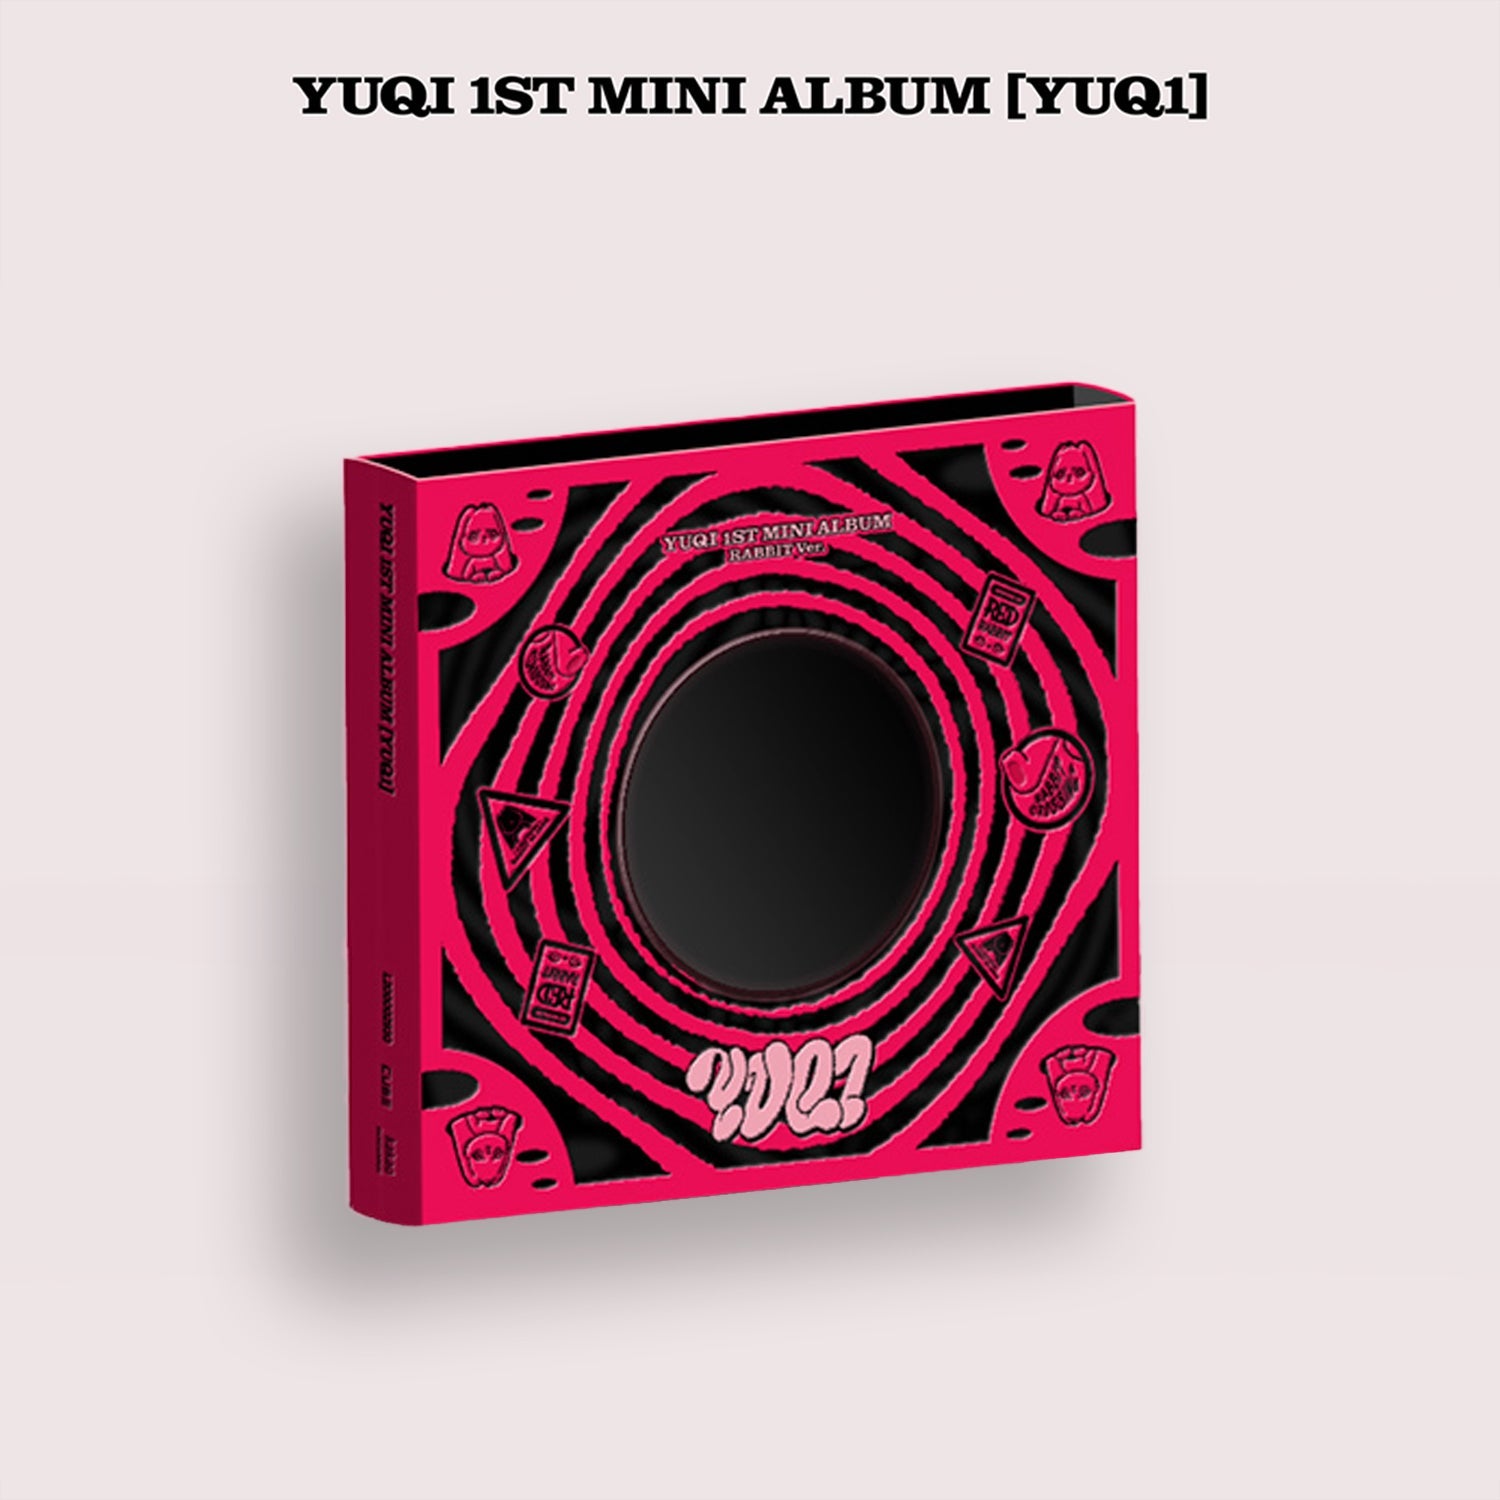 YUQI 1ST MINI ALBUM 'YUQ1' RABBIT VERSION COVER